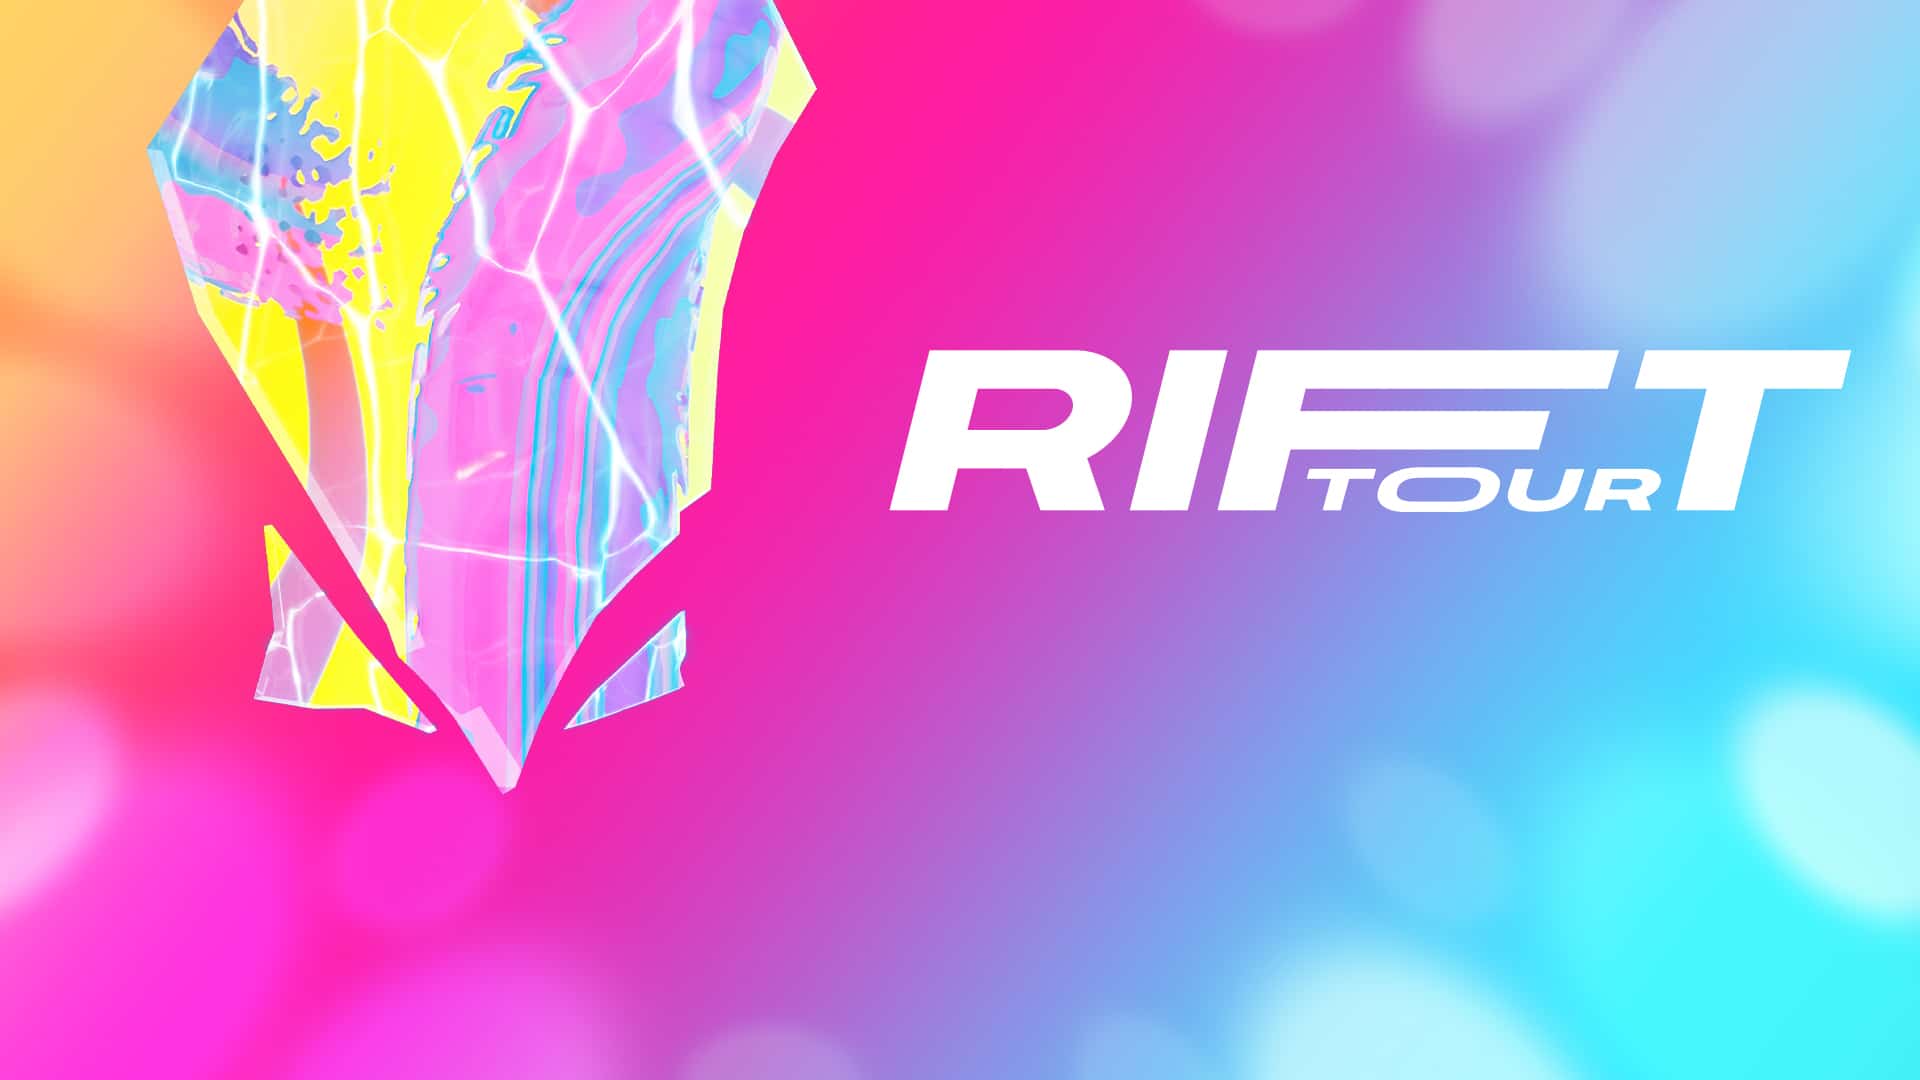 Fortnite anuncia concierto virtual Rift Tour del 6 al 8 de agosto